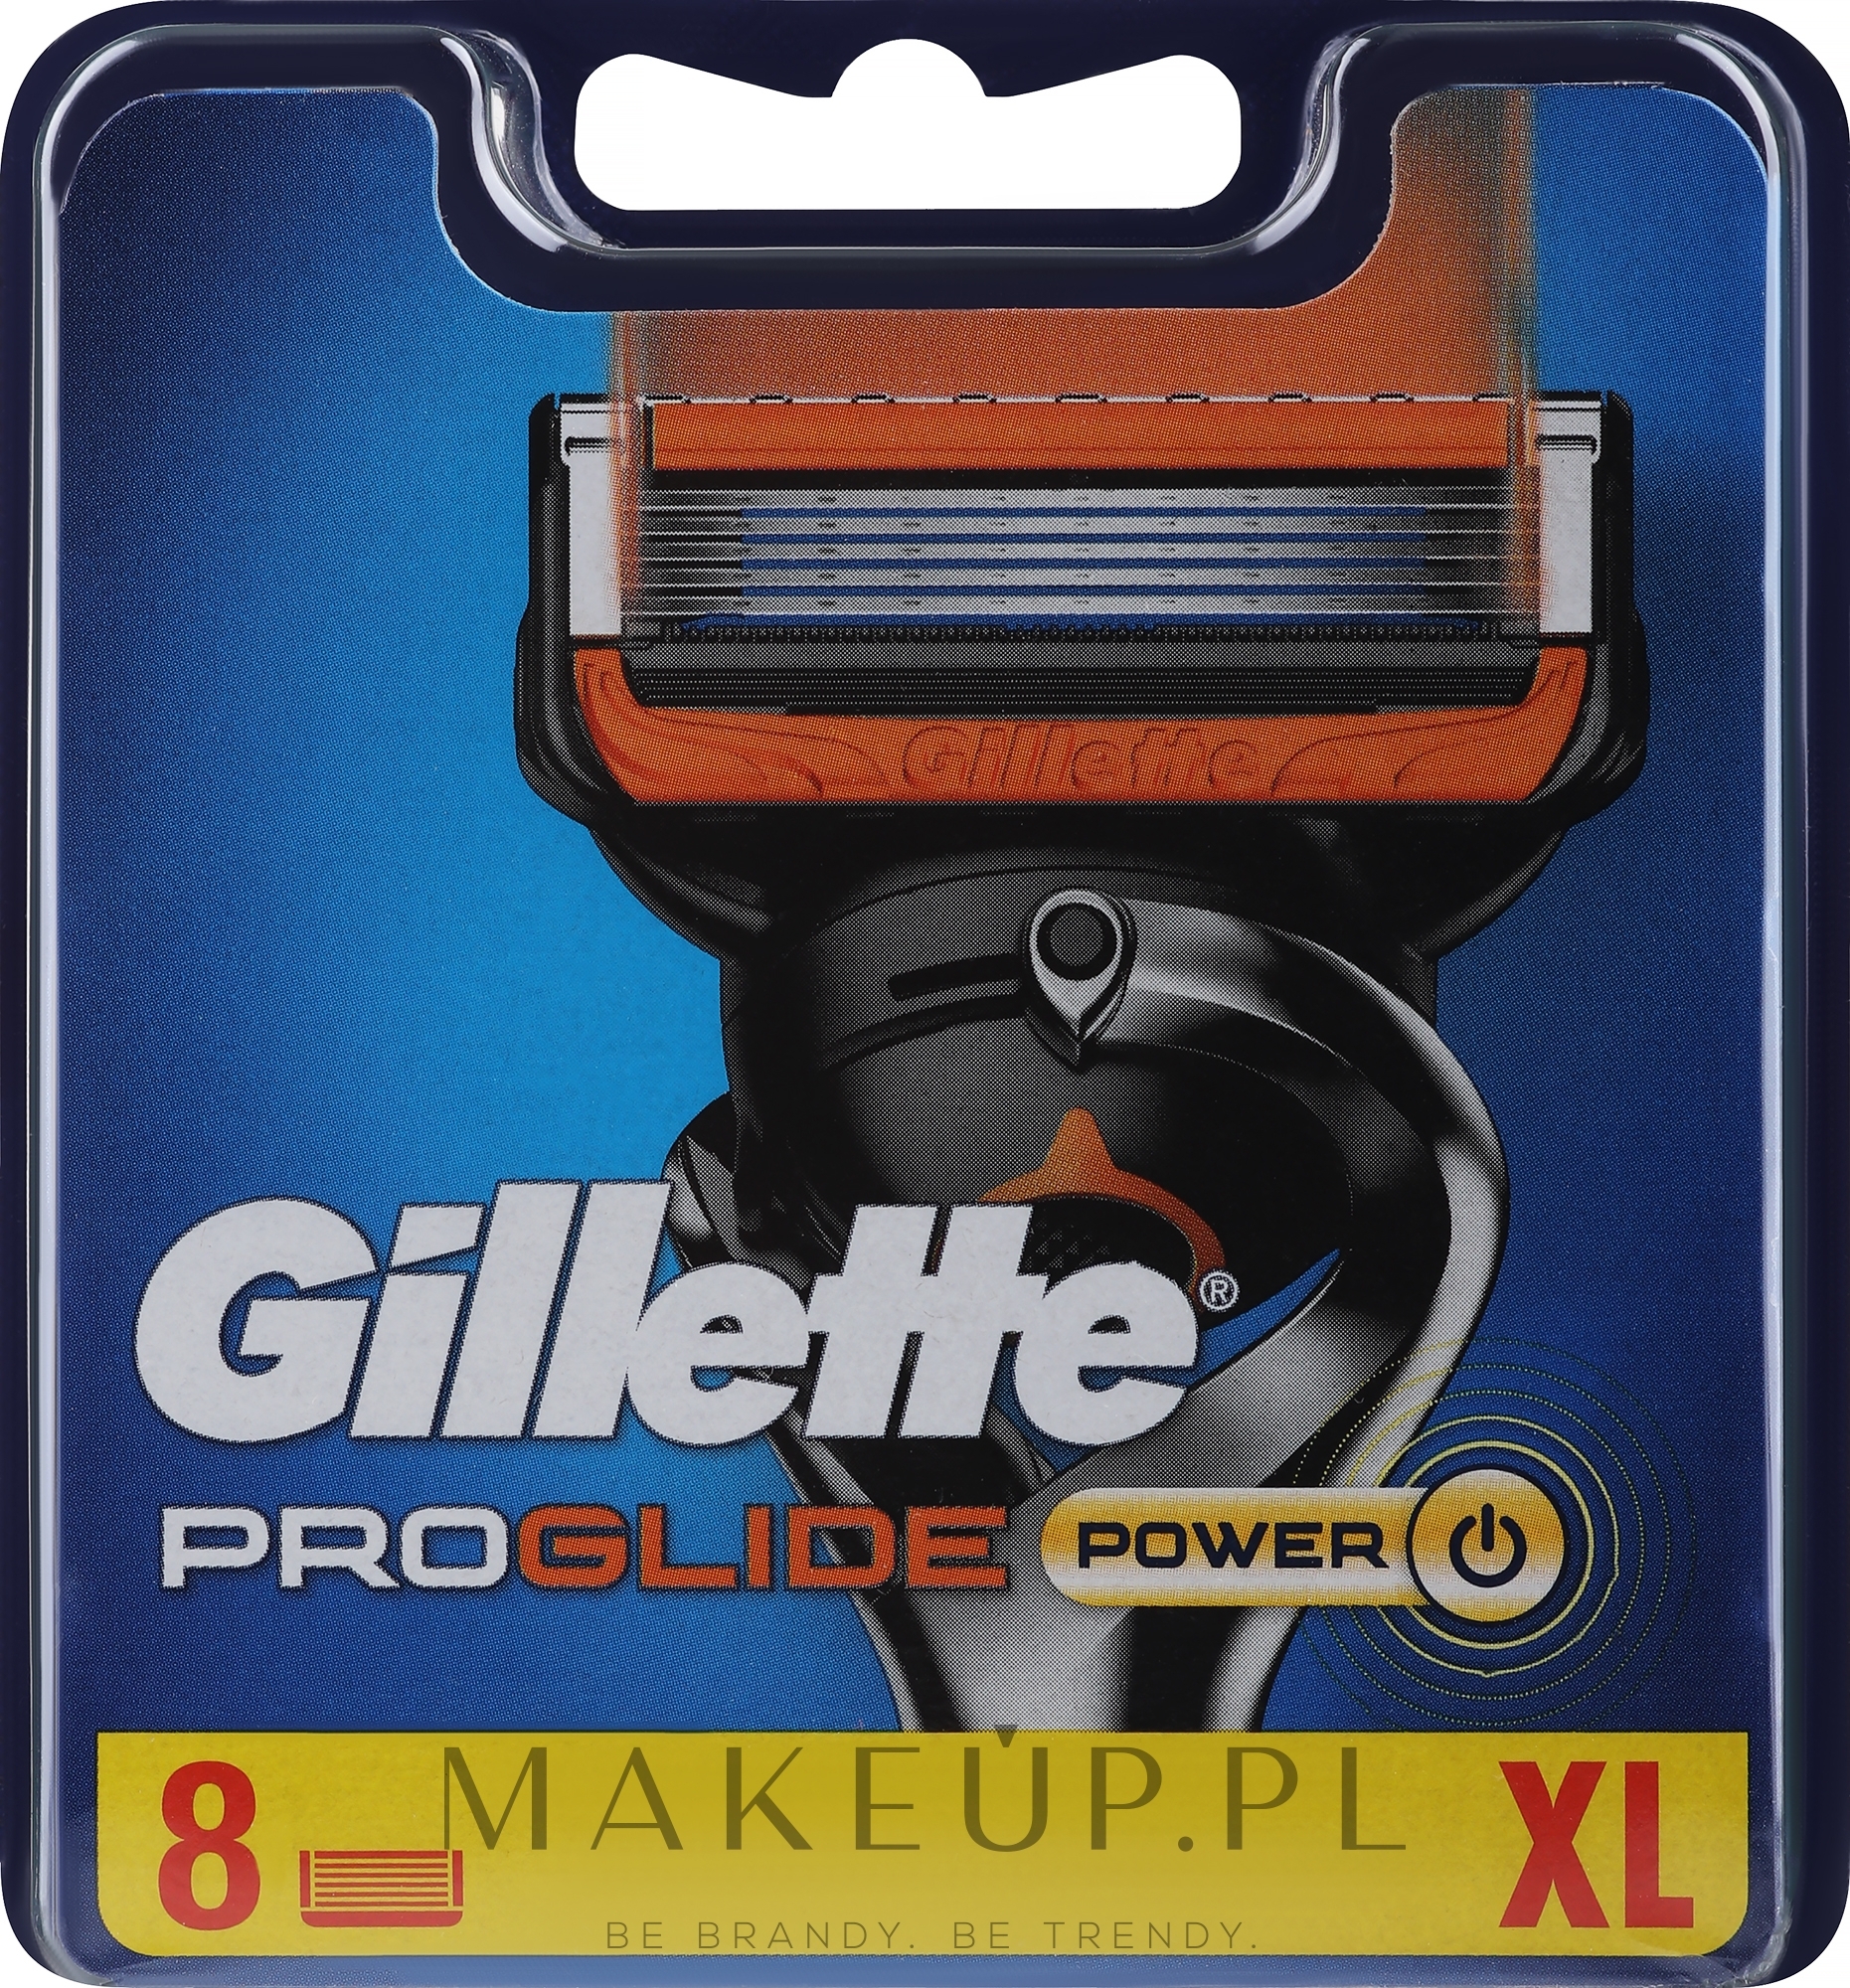 Wymienne wkłady do maszynki, 8 szt. - Gillette Fusion ProGlide Power — Zdjęcie 8 szt.